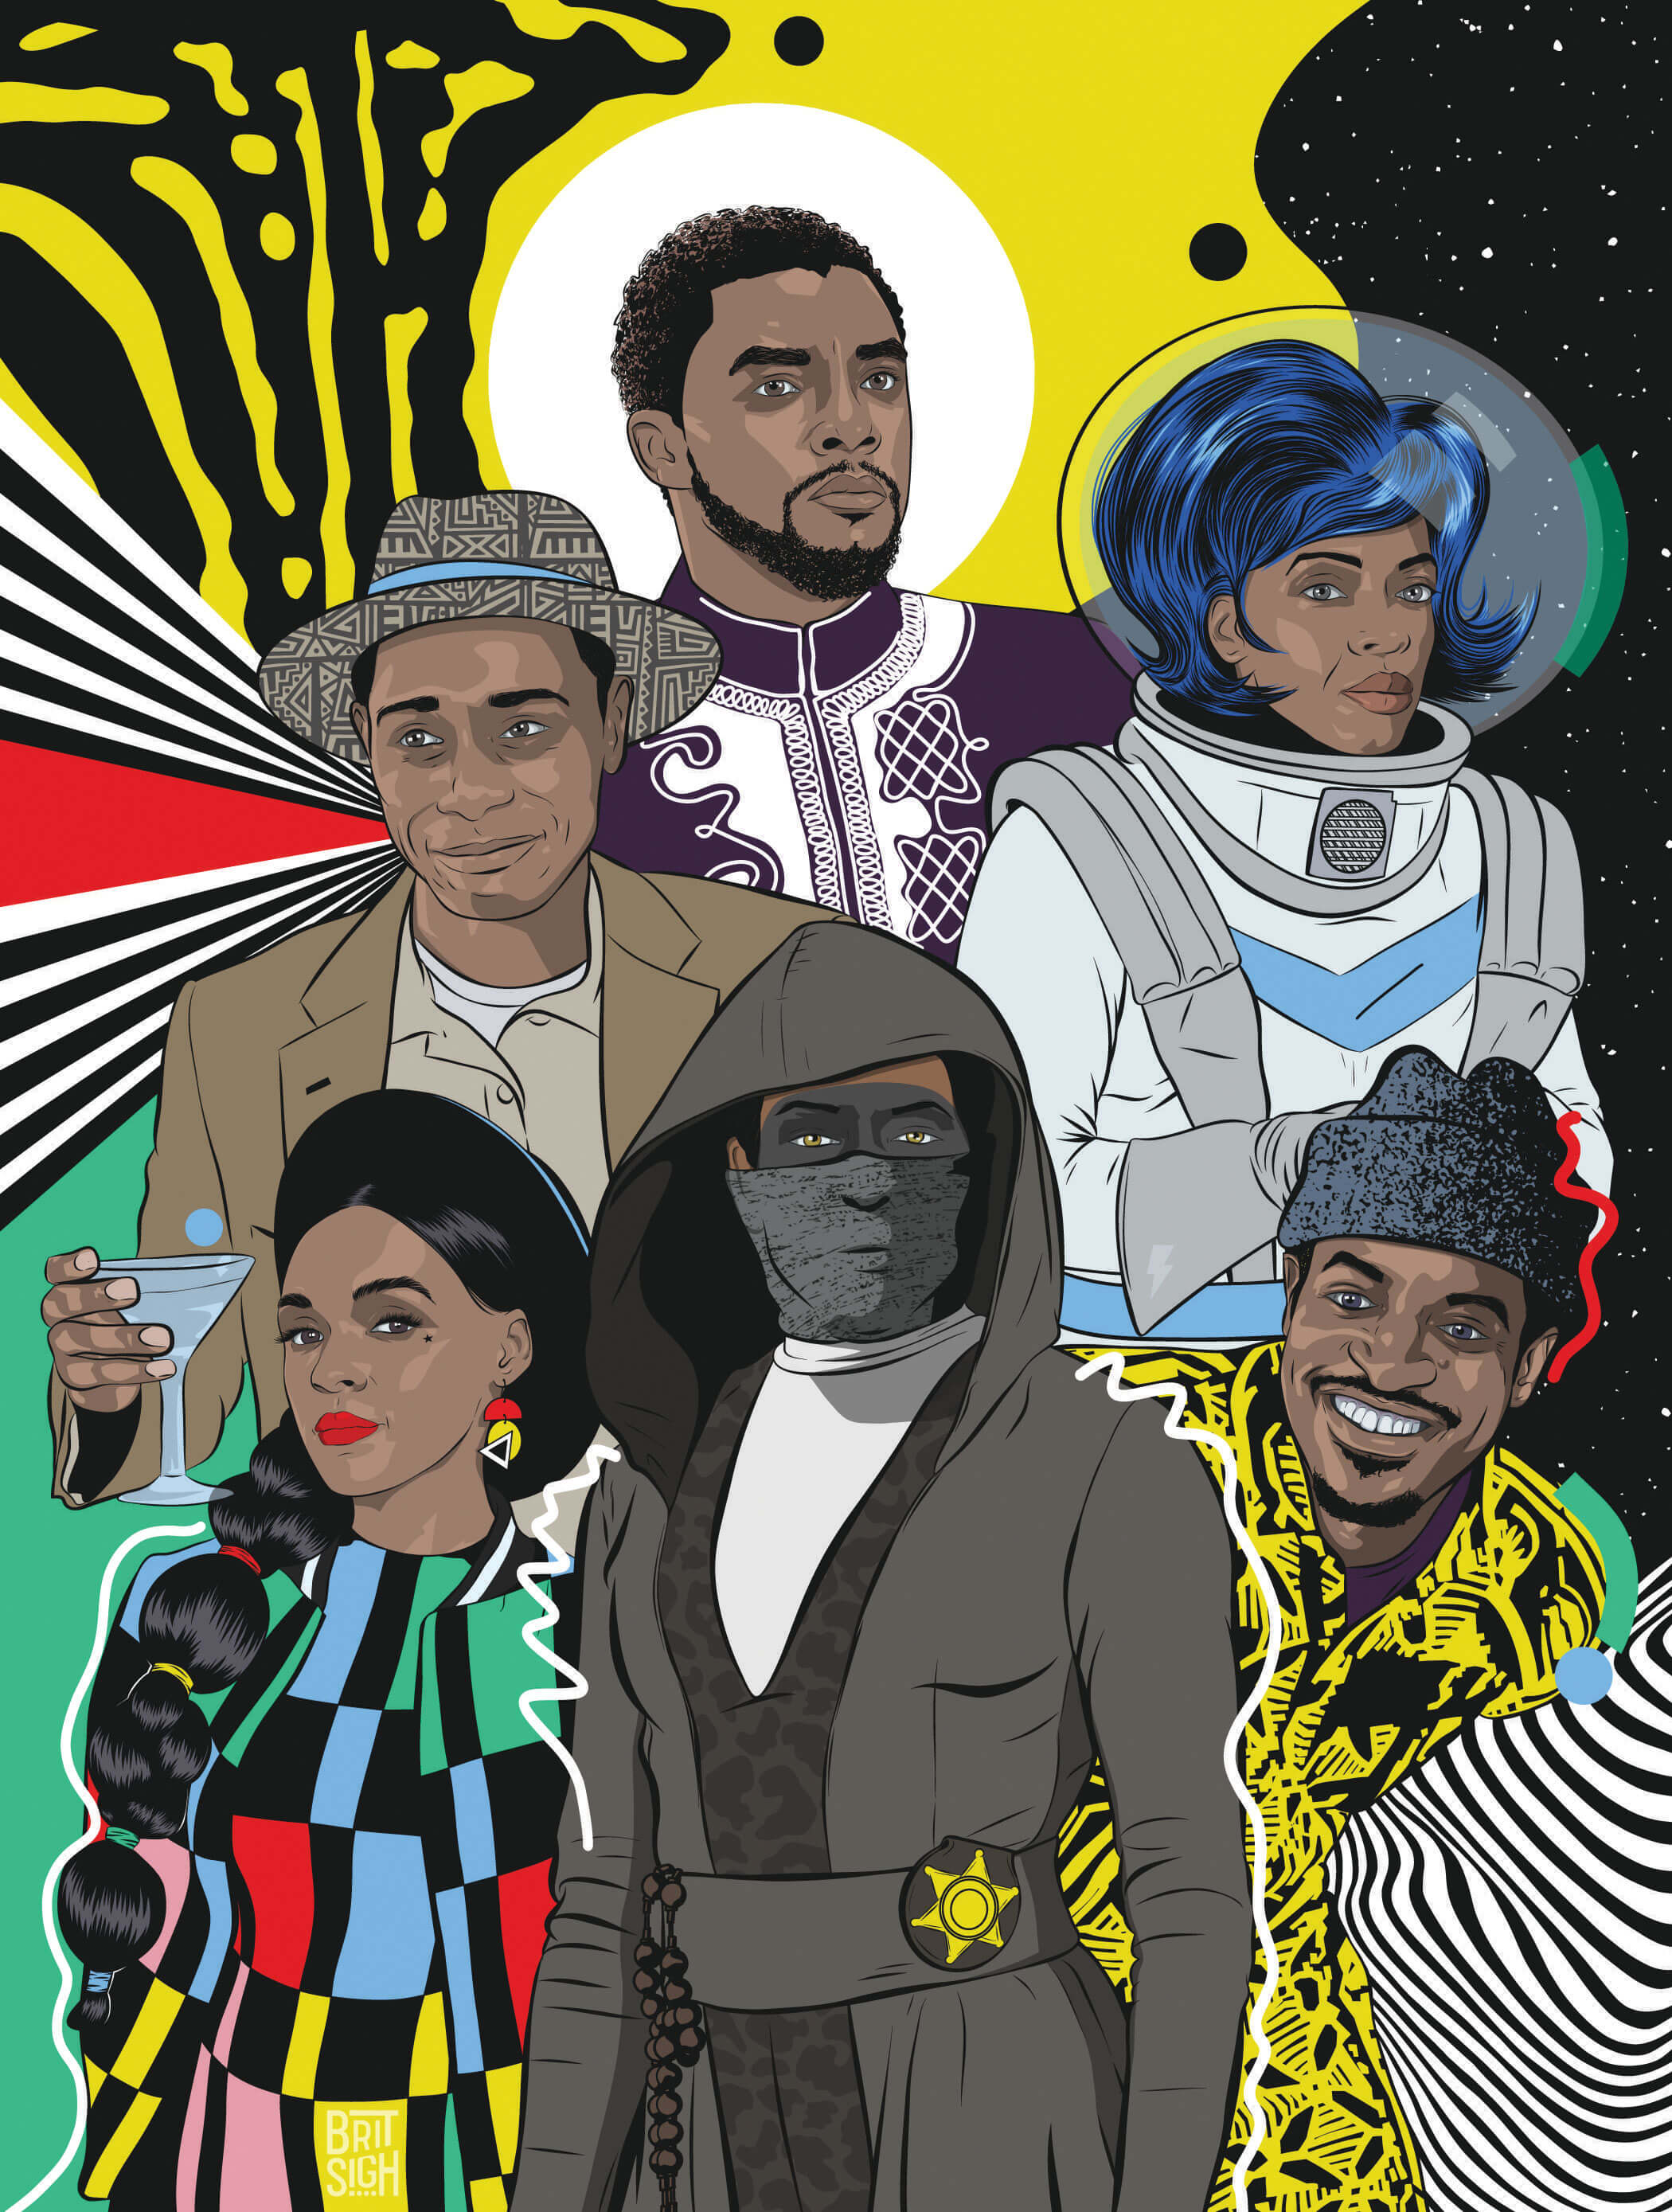 100+] Afrofuturism Wallpapers | Wallpapers.com